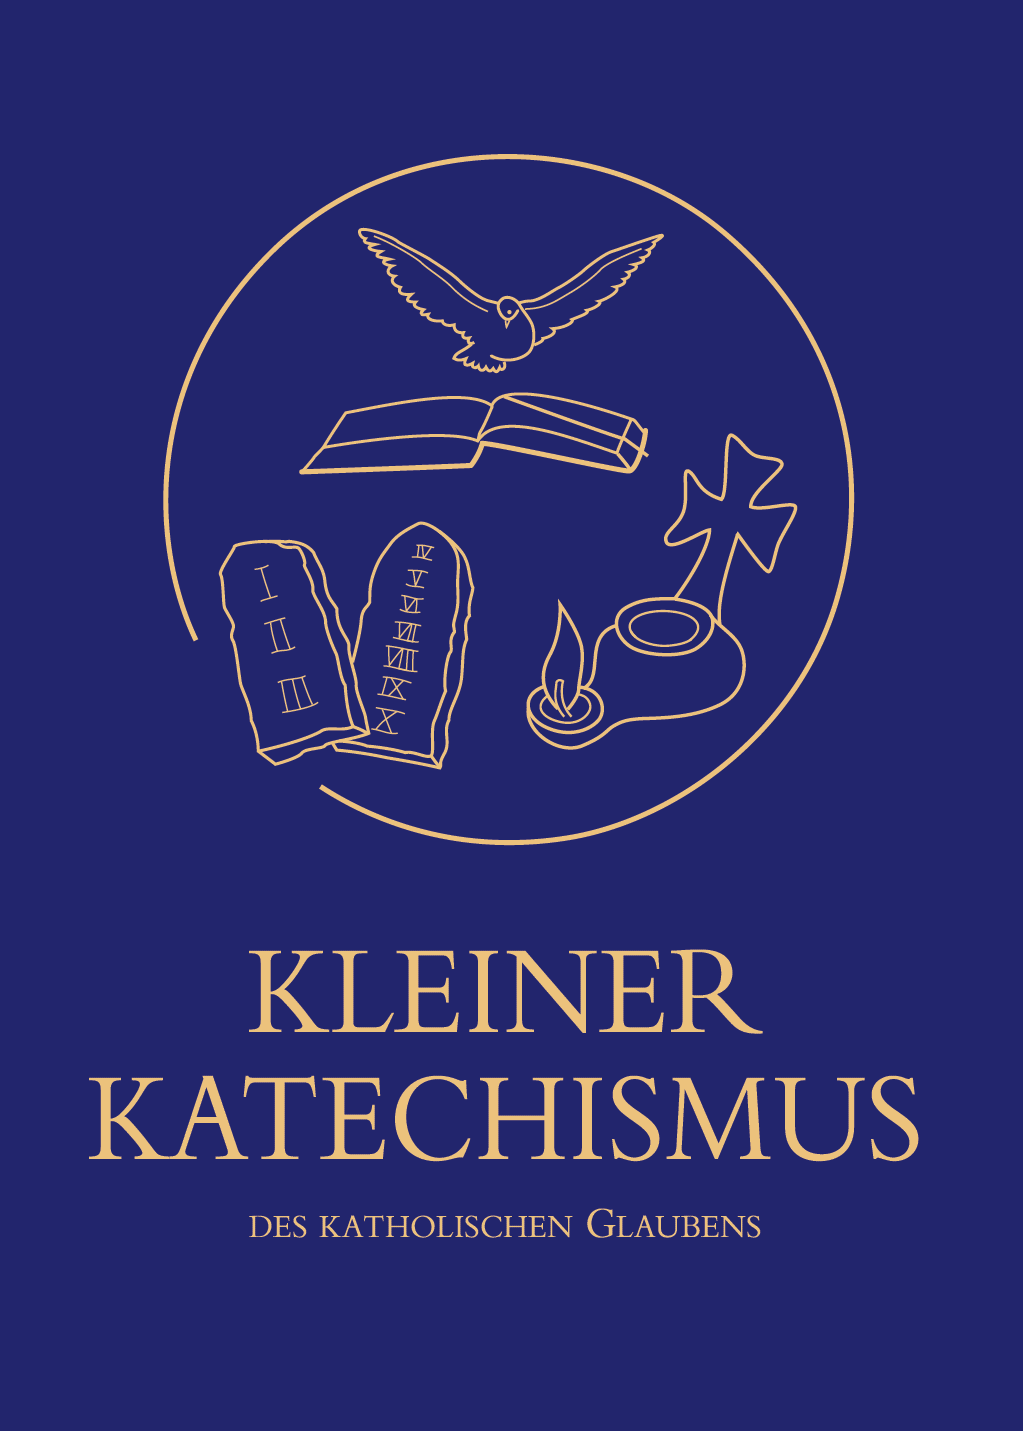 Kleiner-Katechismus